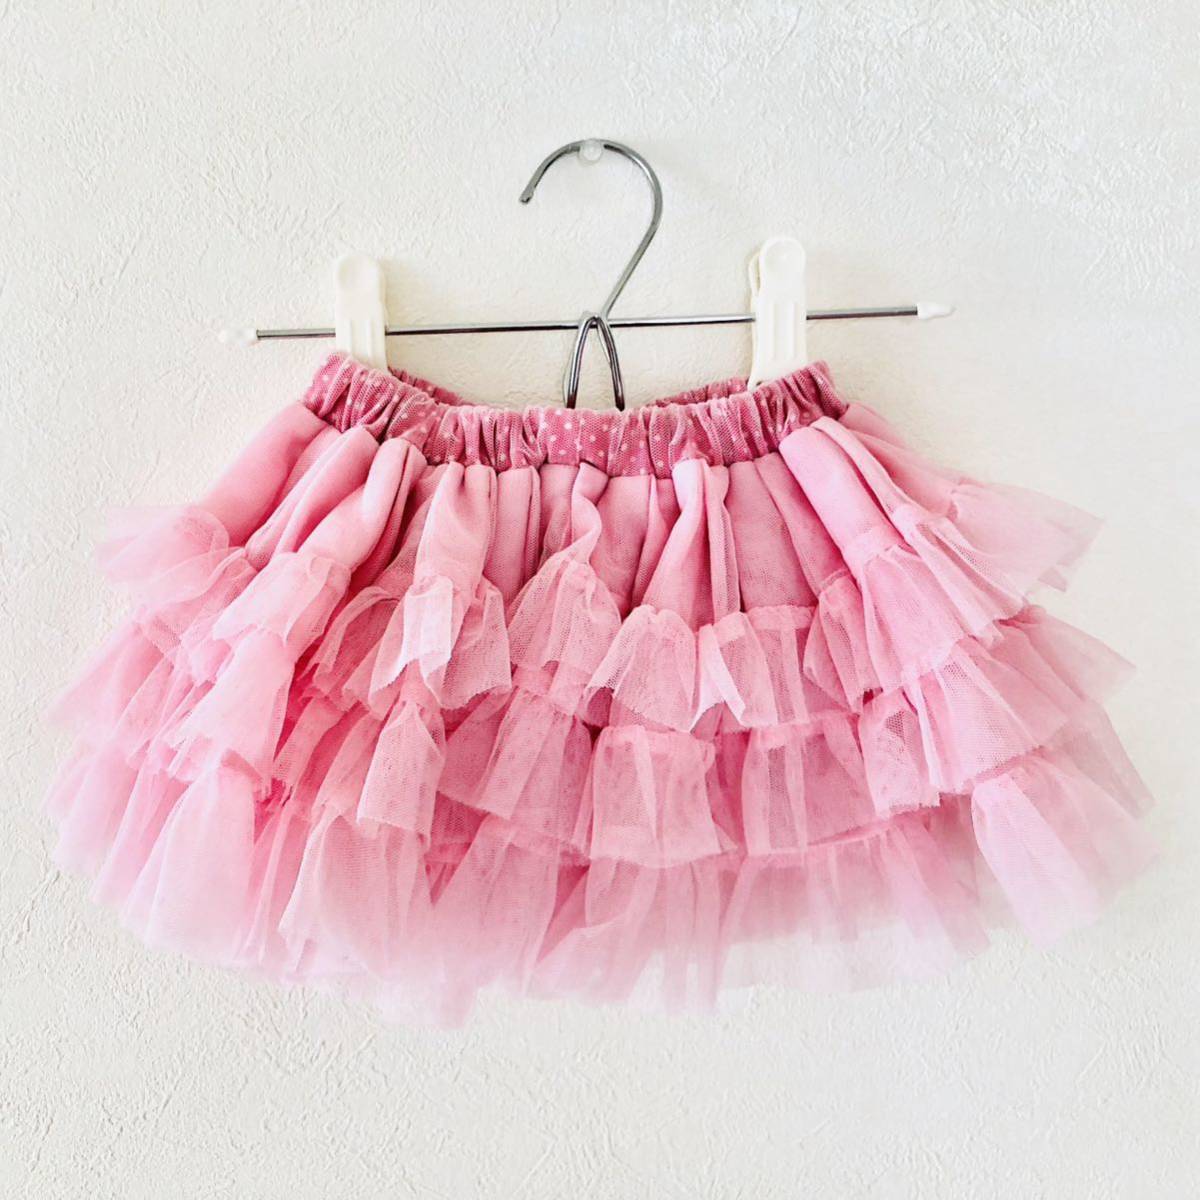 パンパンチュチュ panpantutu スカート 70 女の子 ピンク 子供服